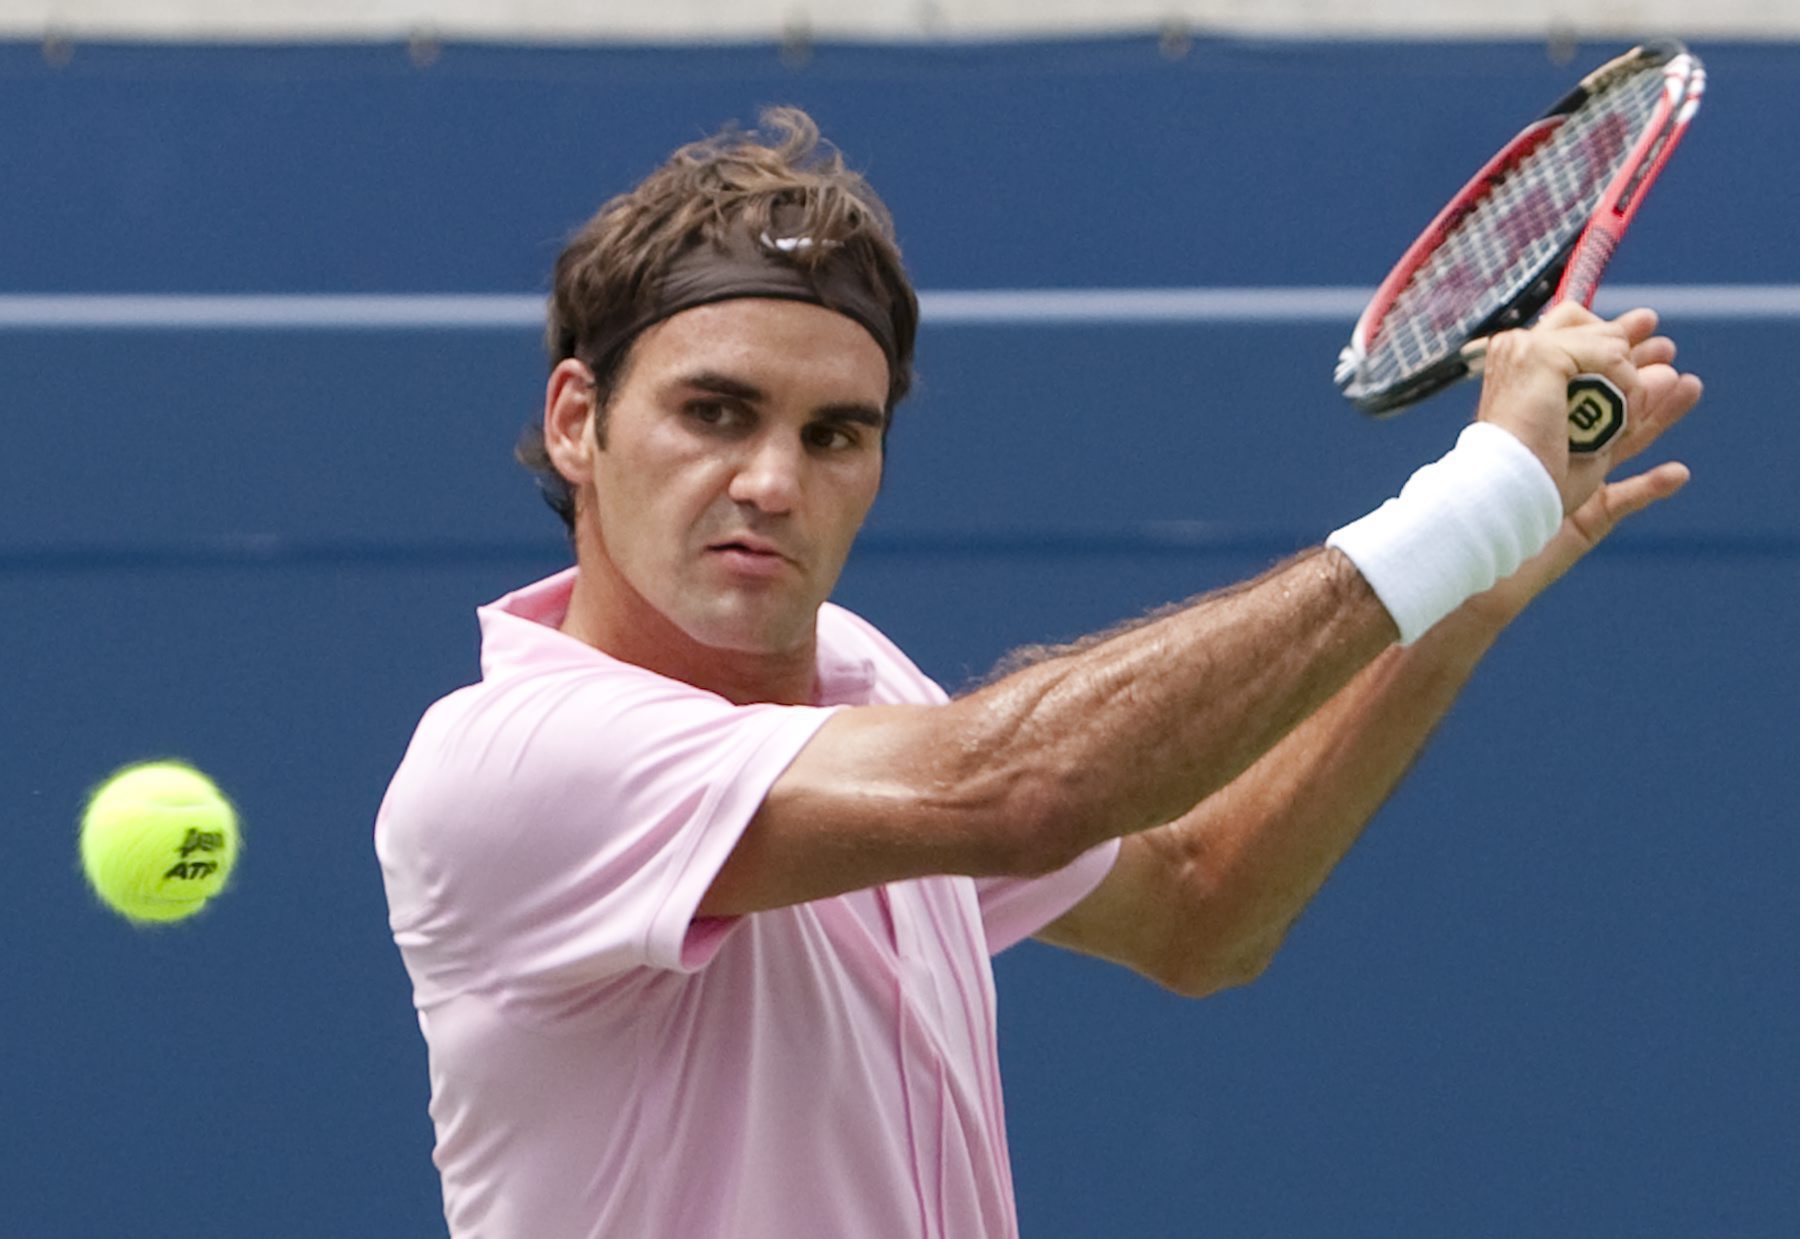 Tennis, Stockholm Open, Roger Federer